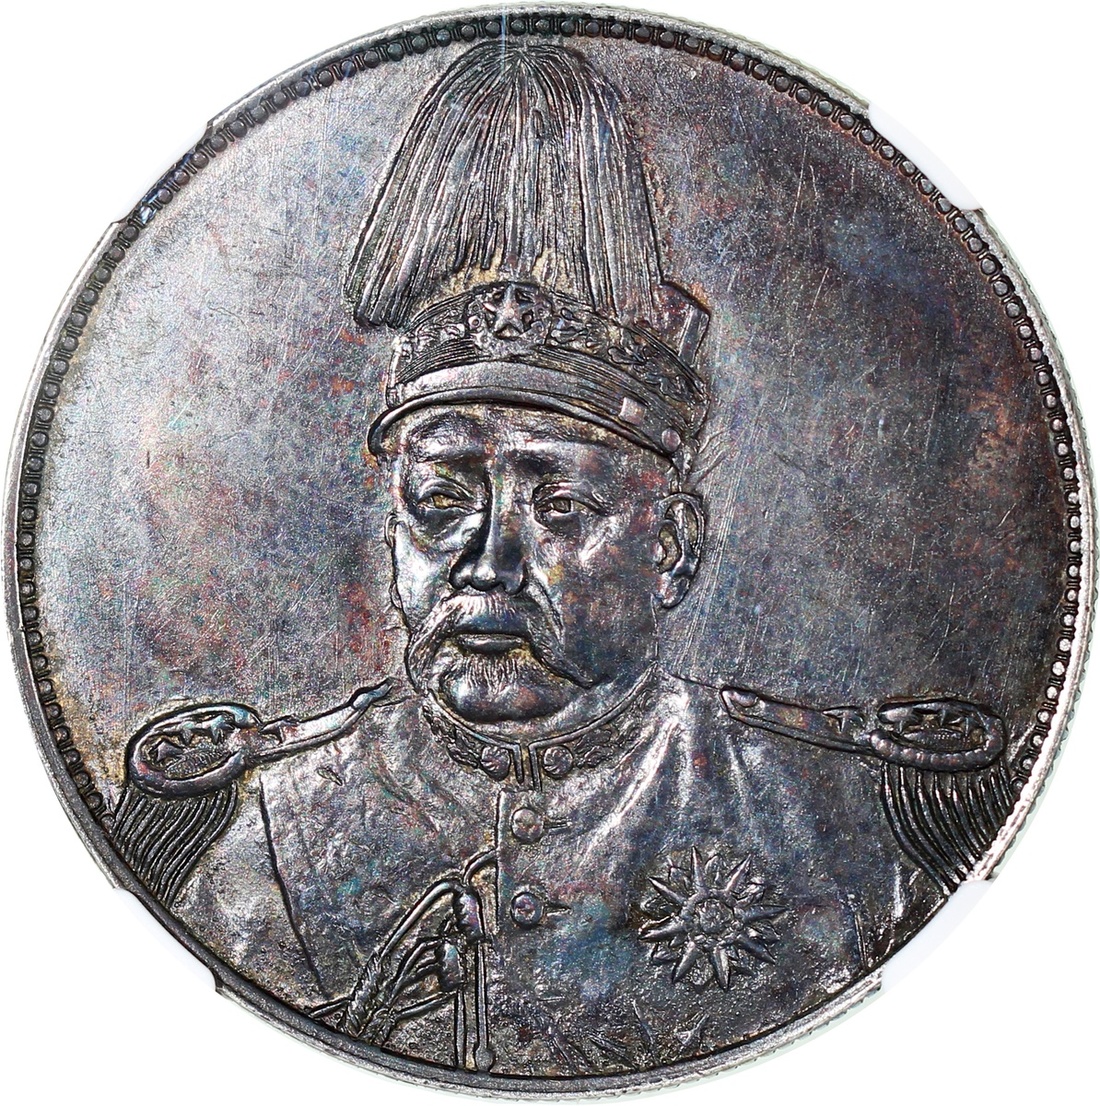 425 - China, Republic, silver $1, Hung Hsien(1916), Yuan Shih Kai 